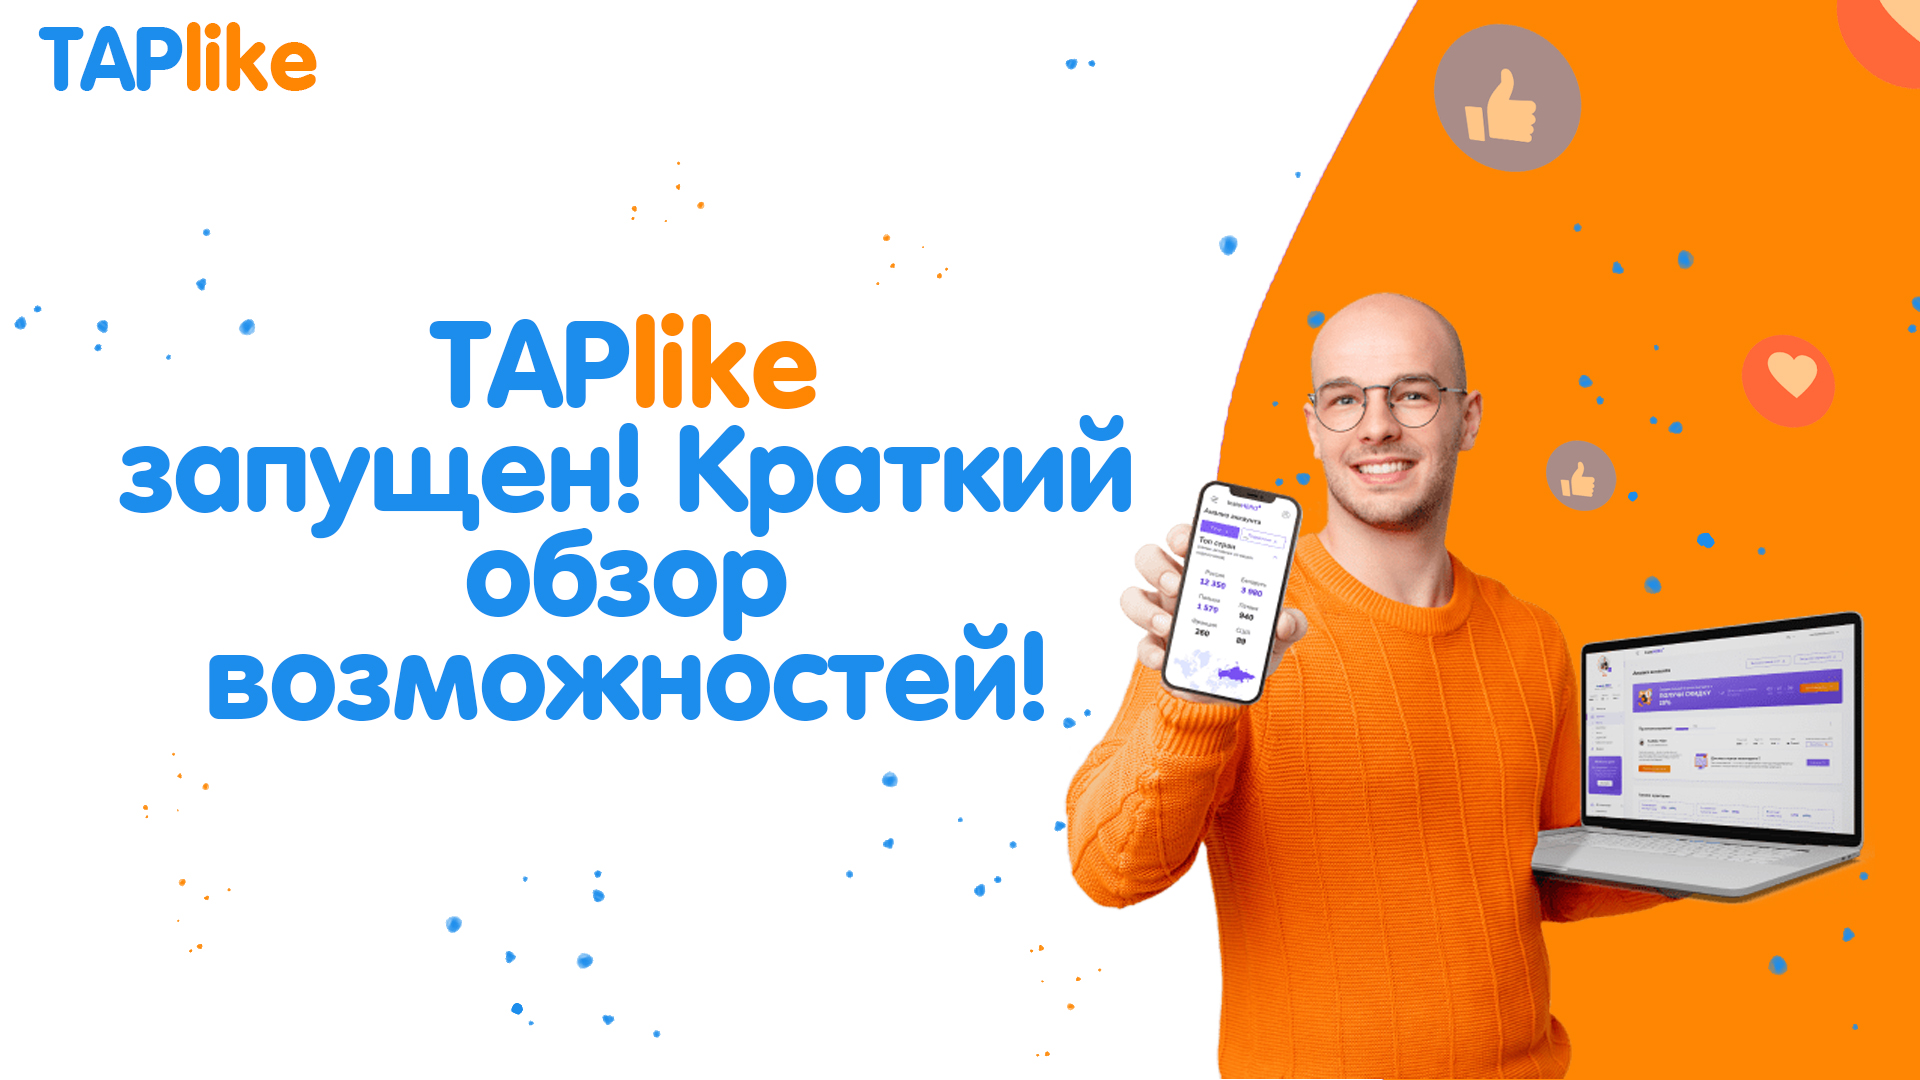 TapLike открылся - обзор возможностей и планы